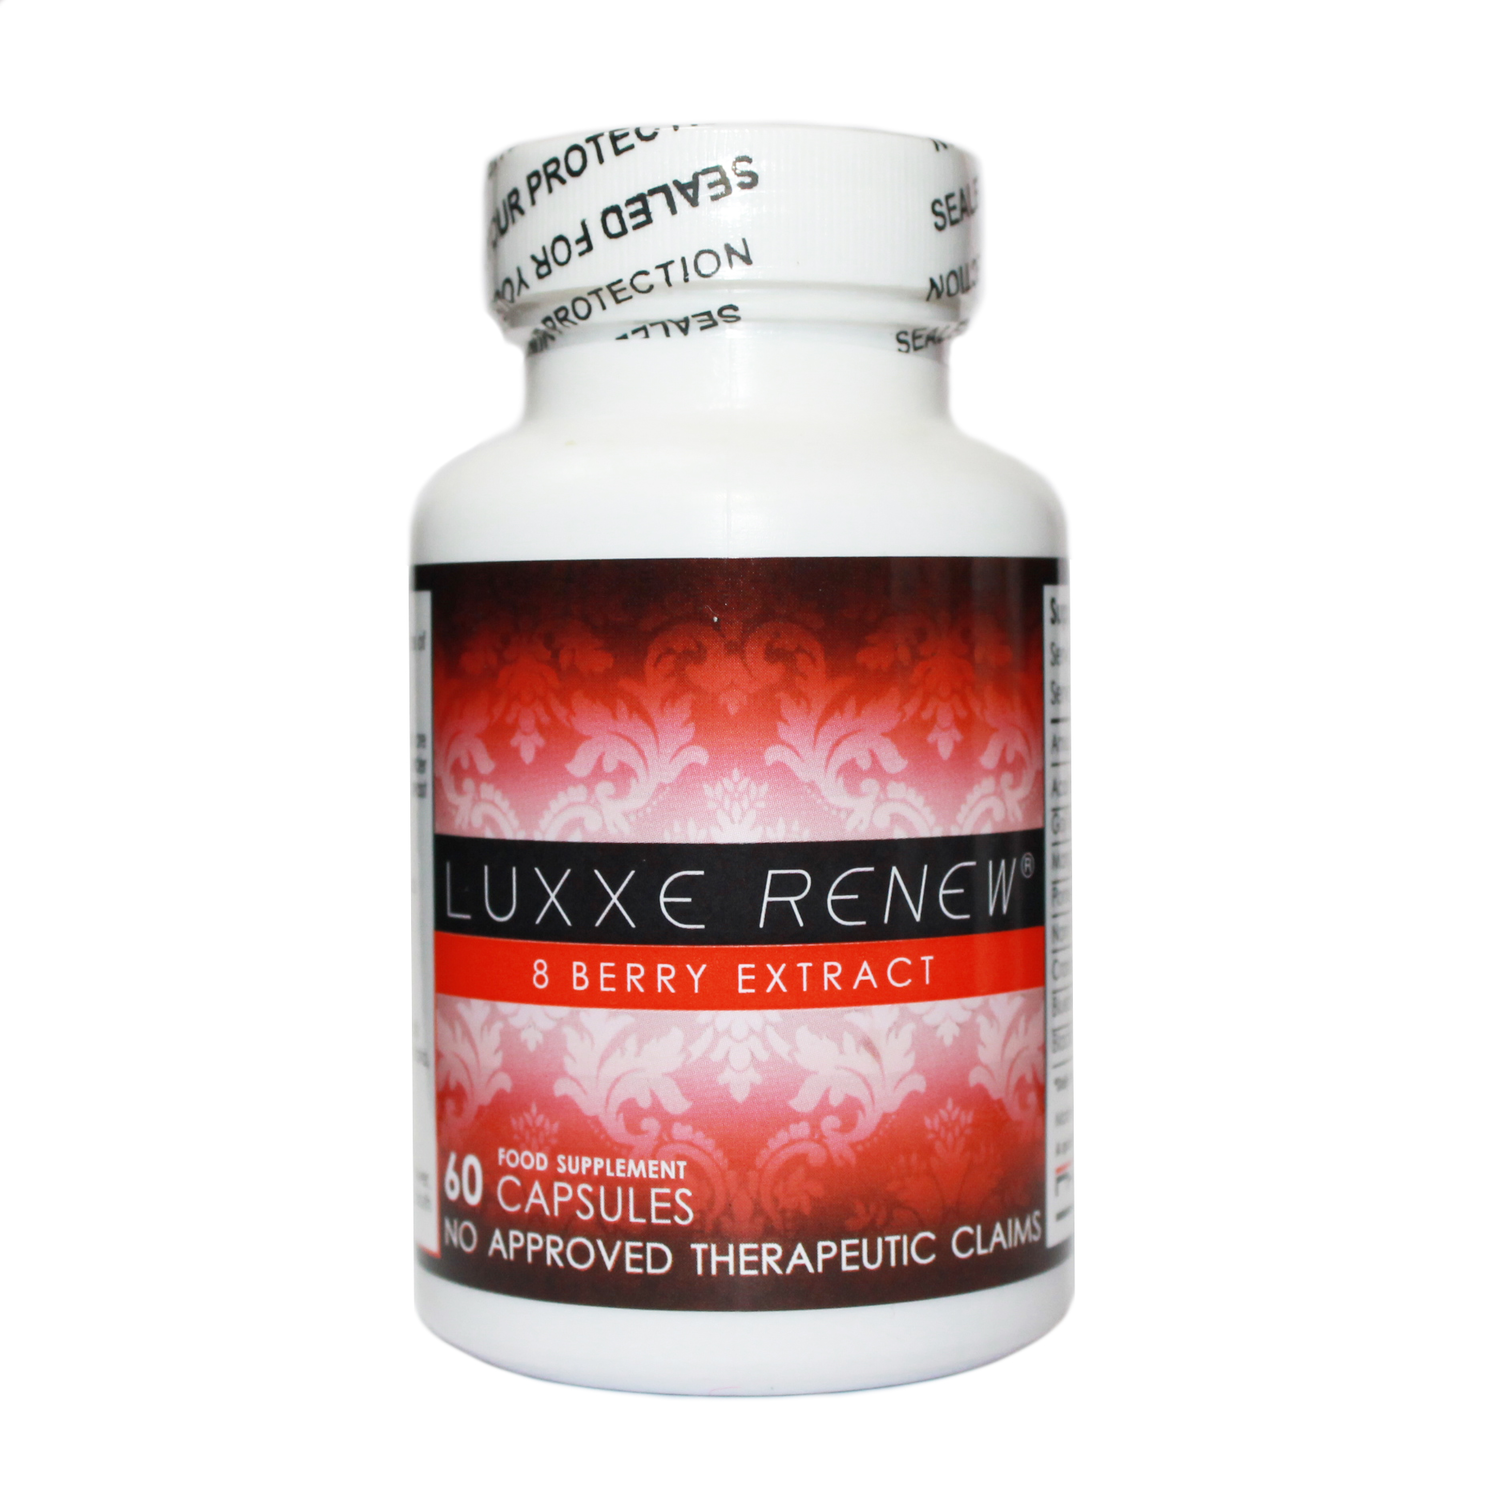 Luxxe Renew - 8 Berry Extract